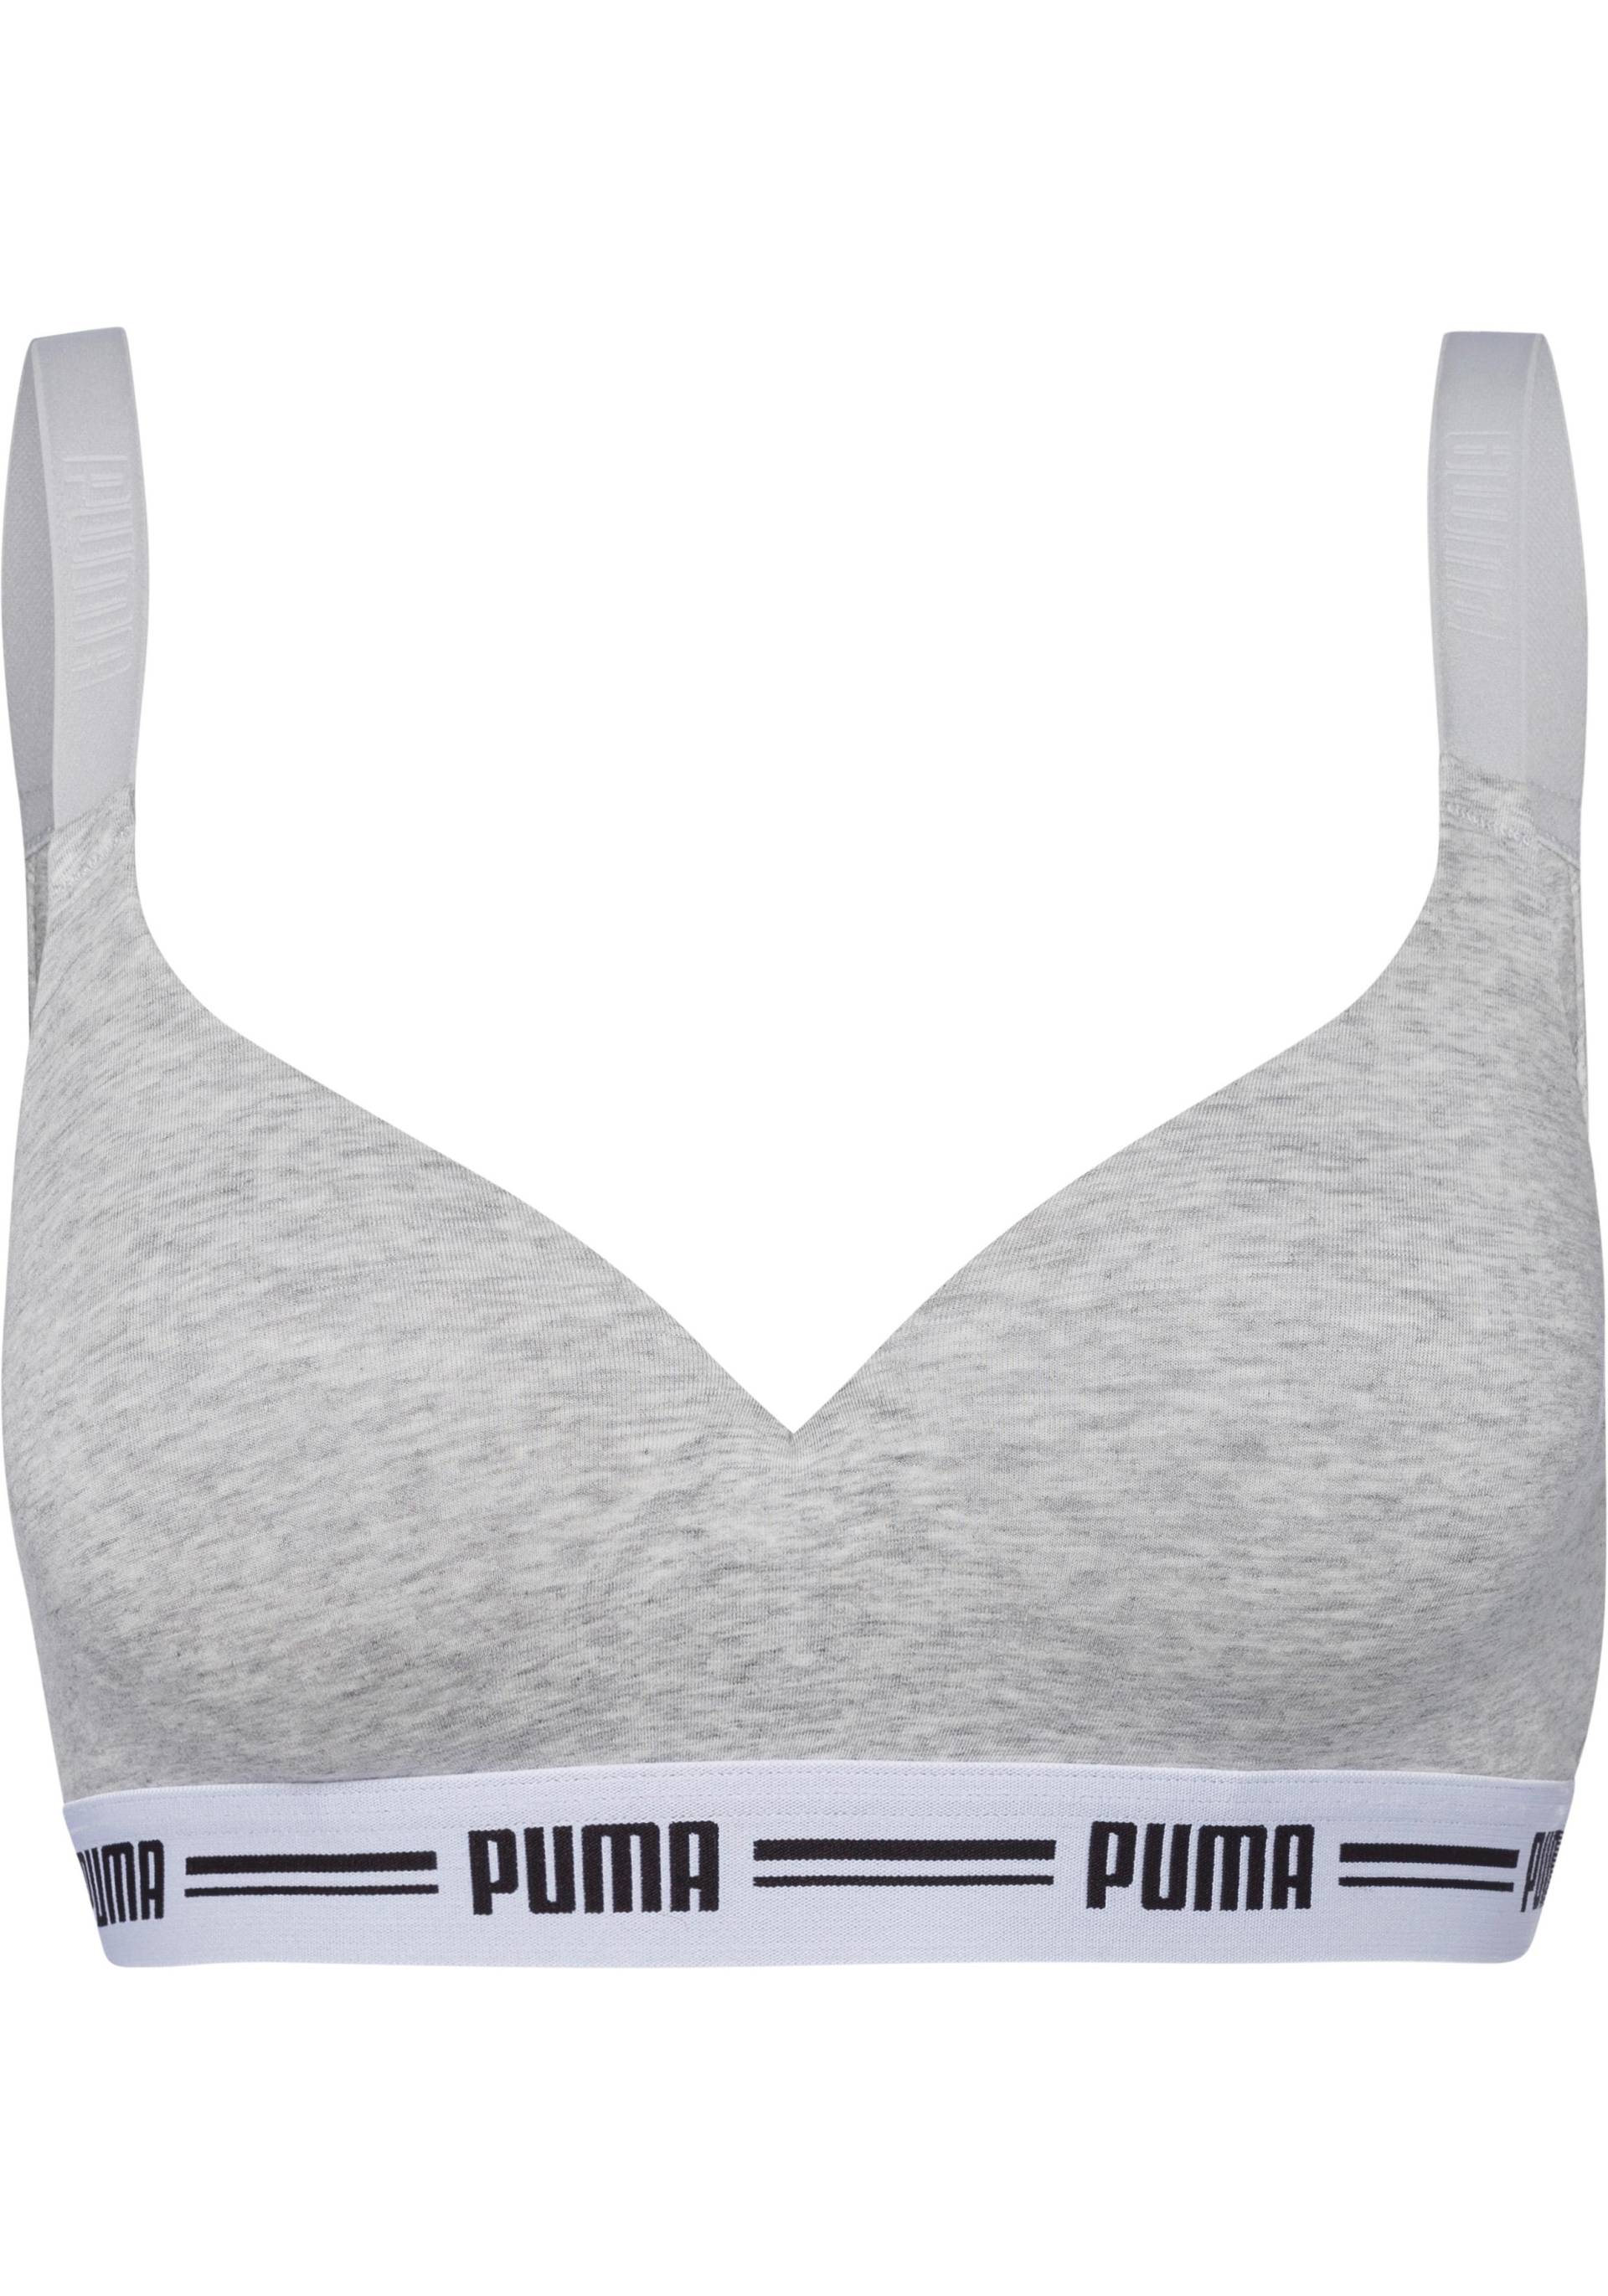 PUMA Bralette »Iconic« von Puma